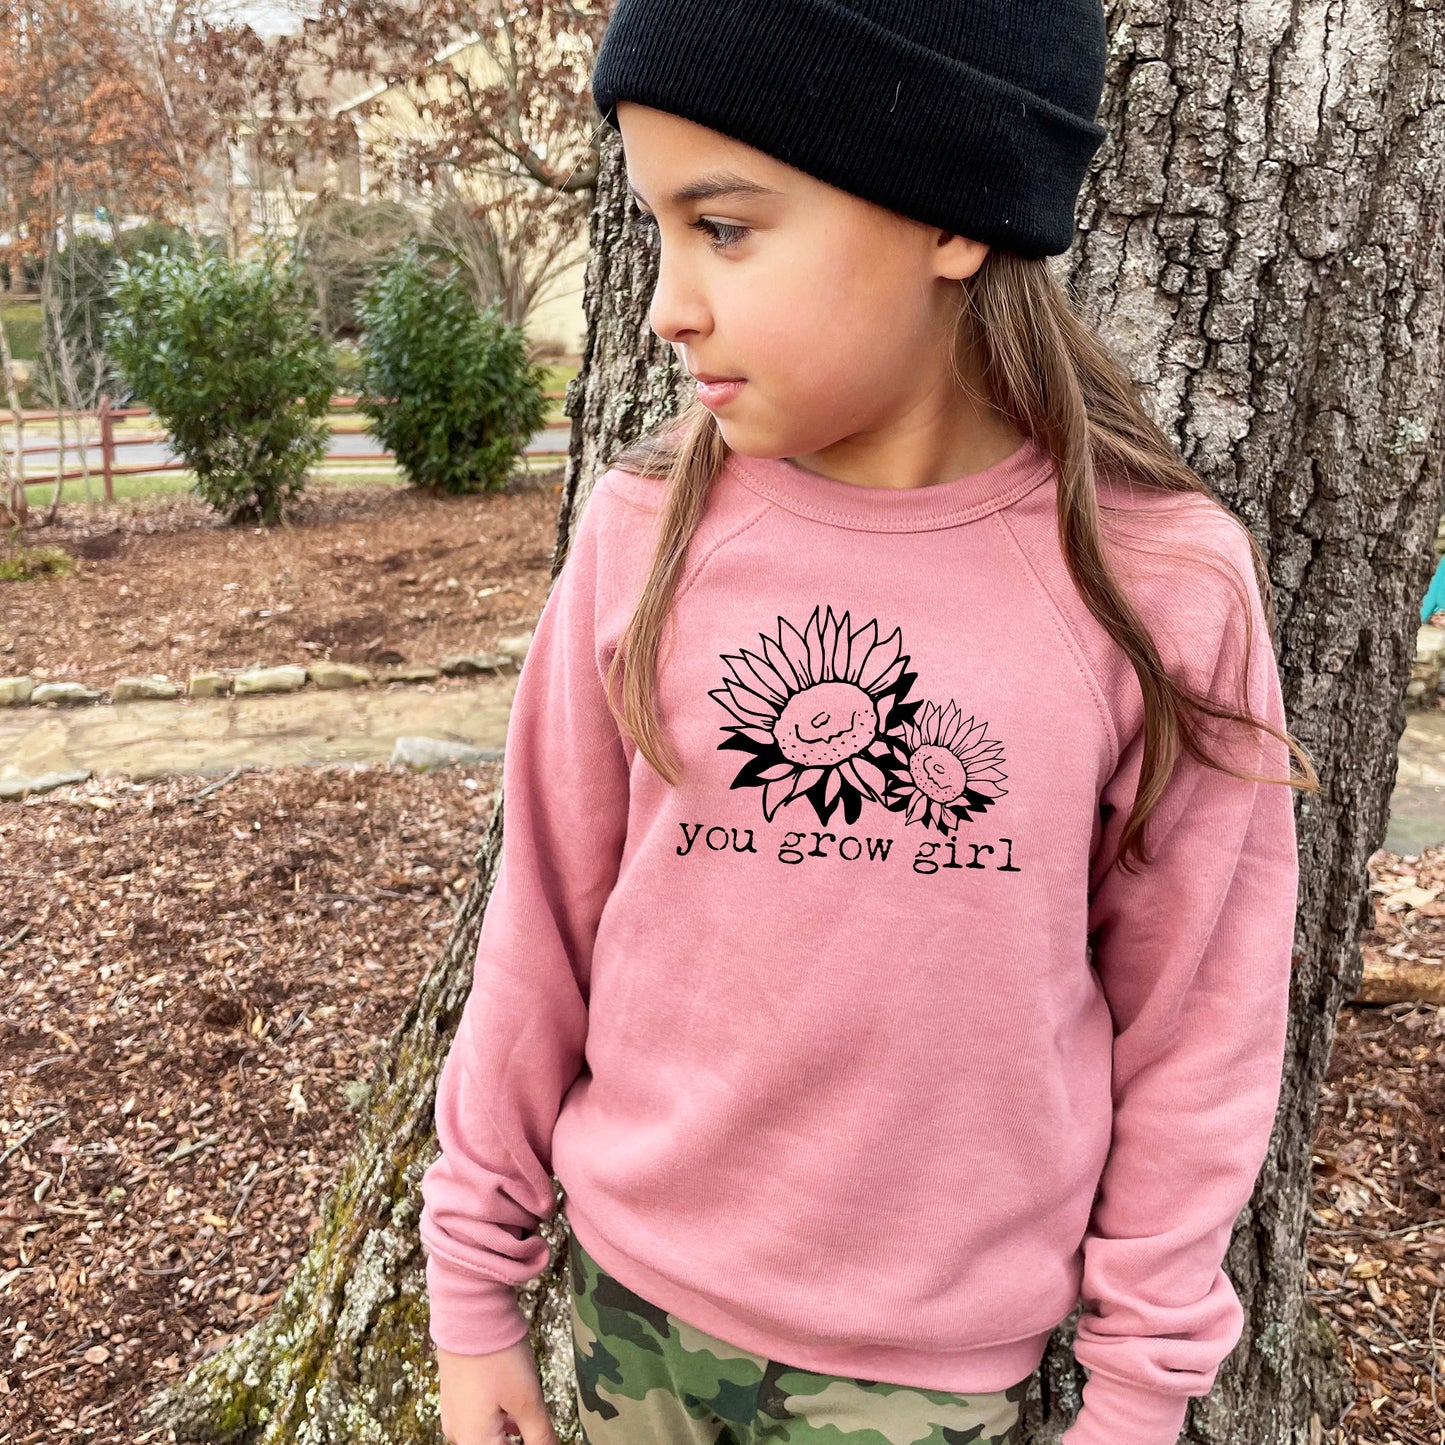 Grow Girl - Kid's Sweatshirt - Heather Gray or Mauve